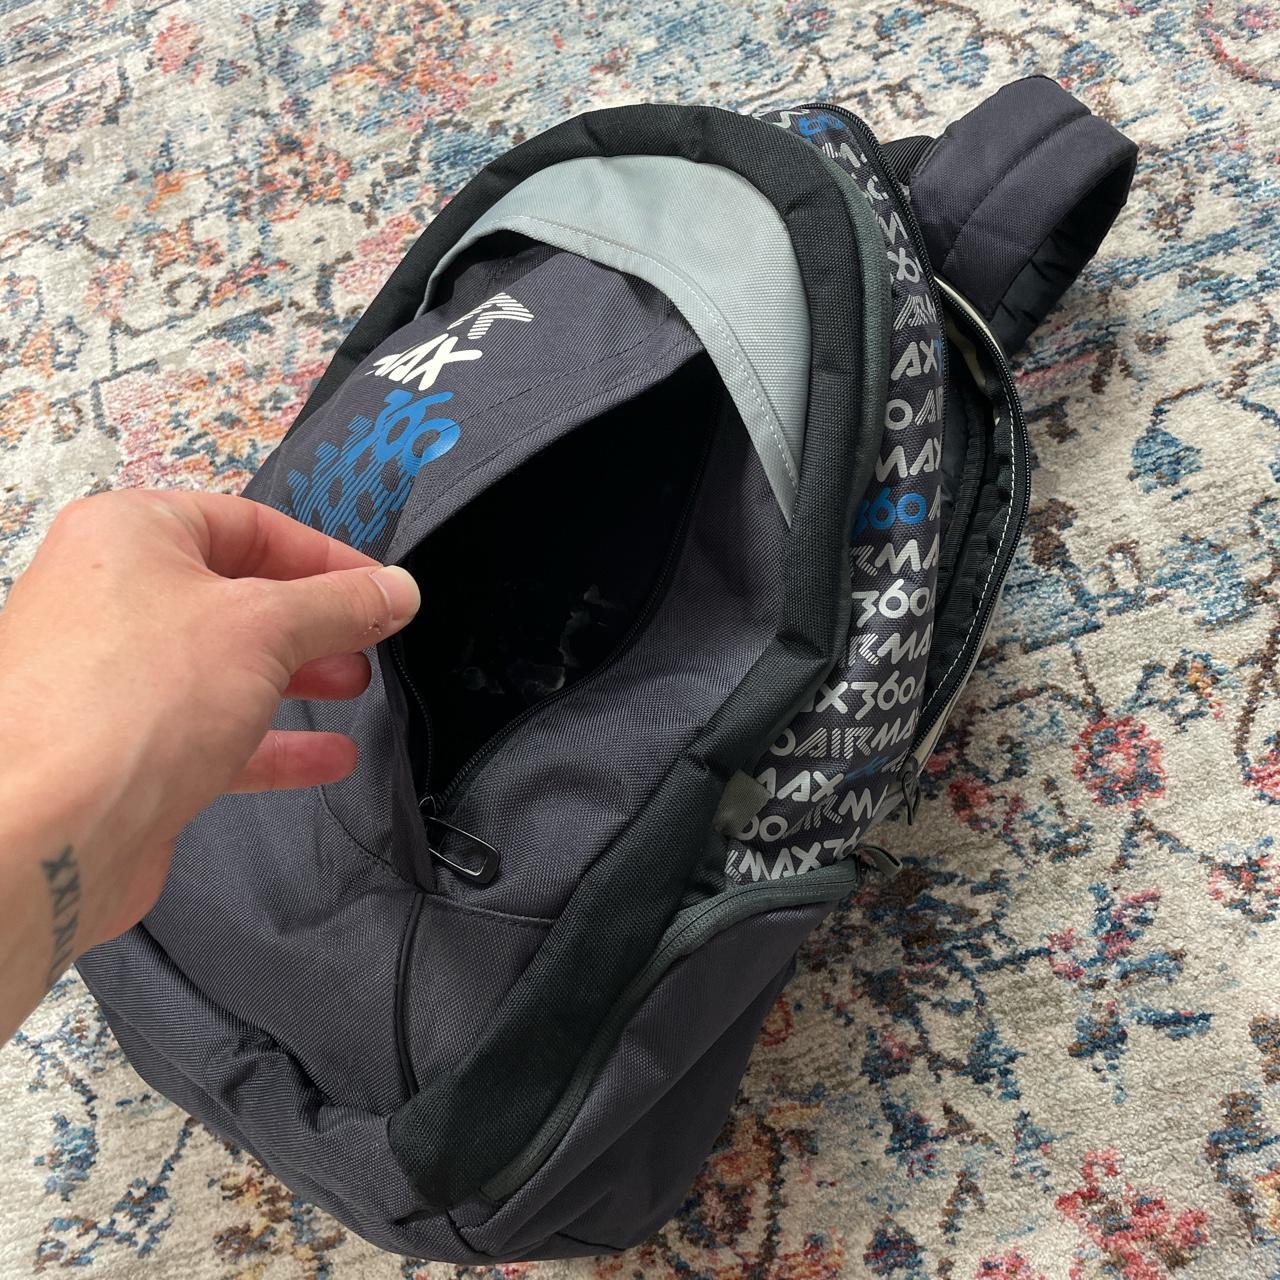 Vintage Nike Air Max Backpack